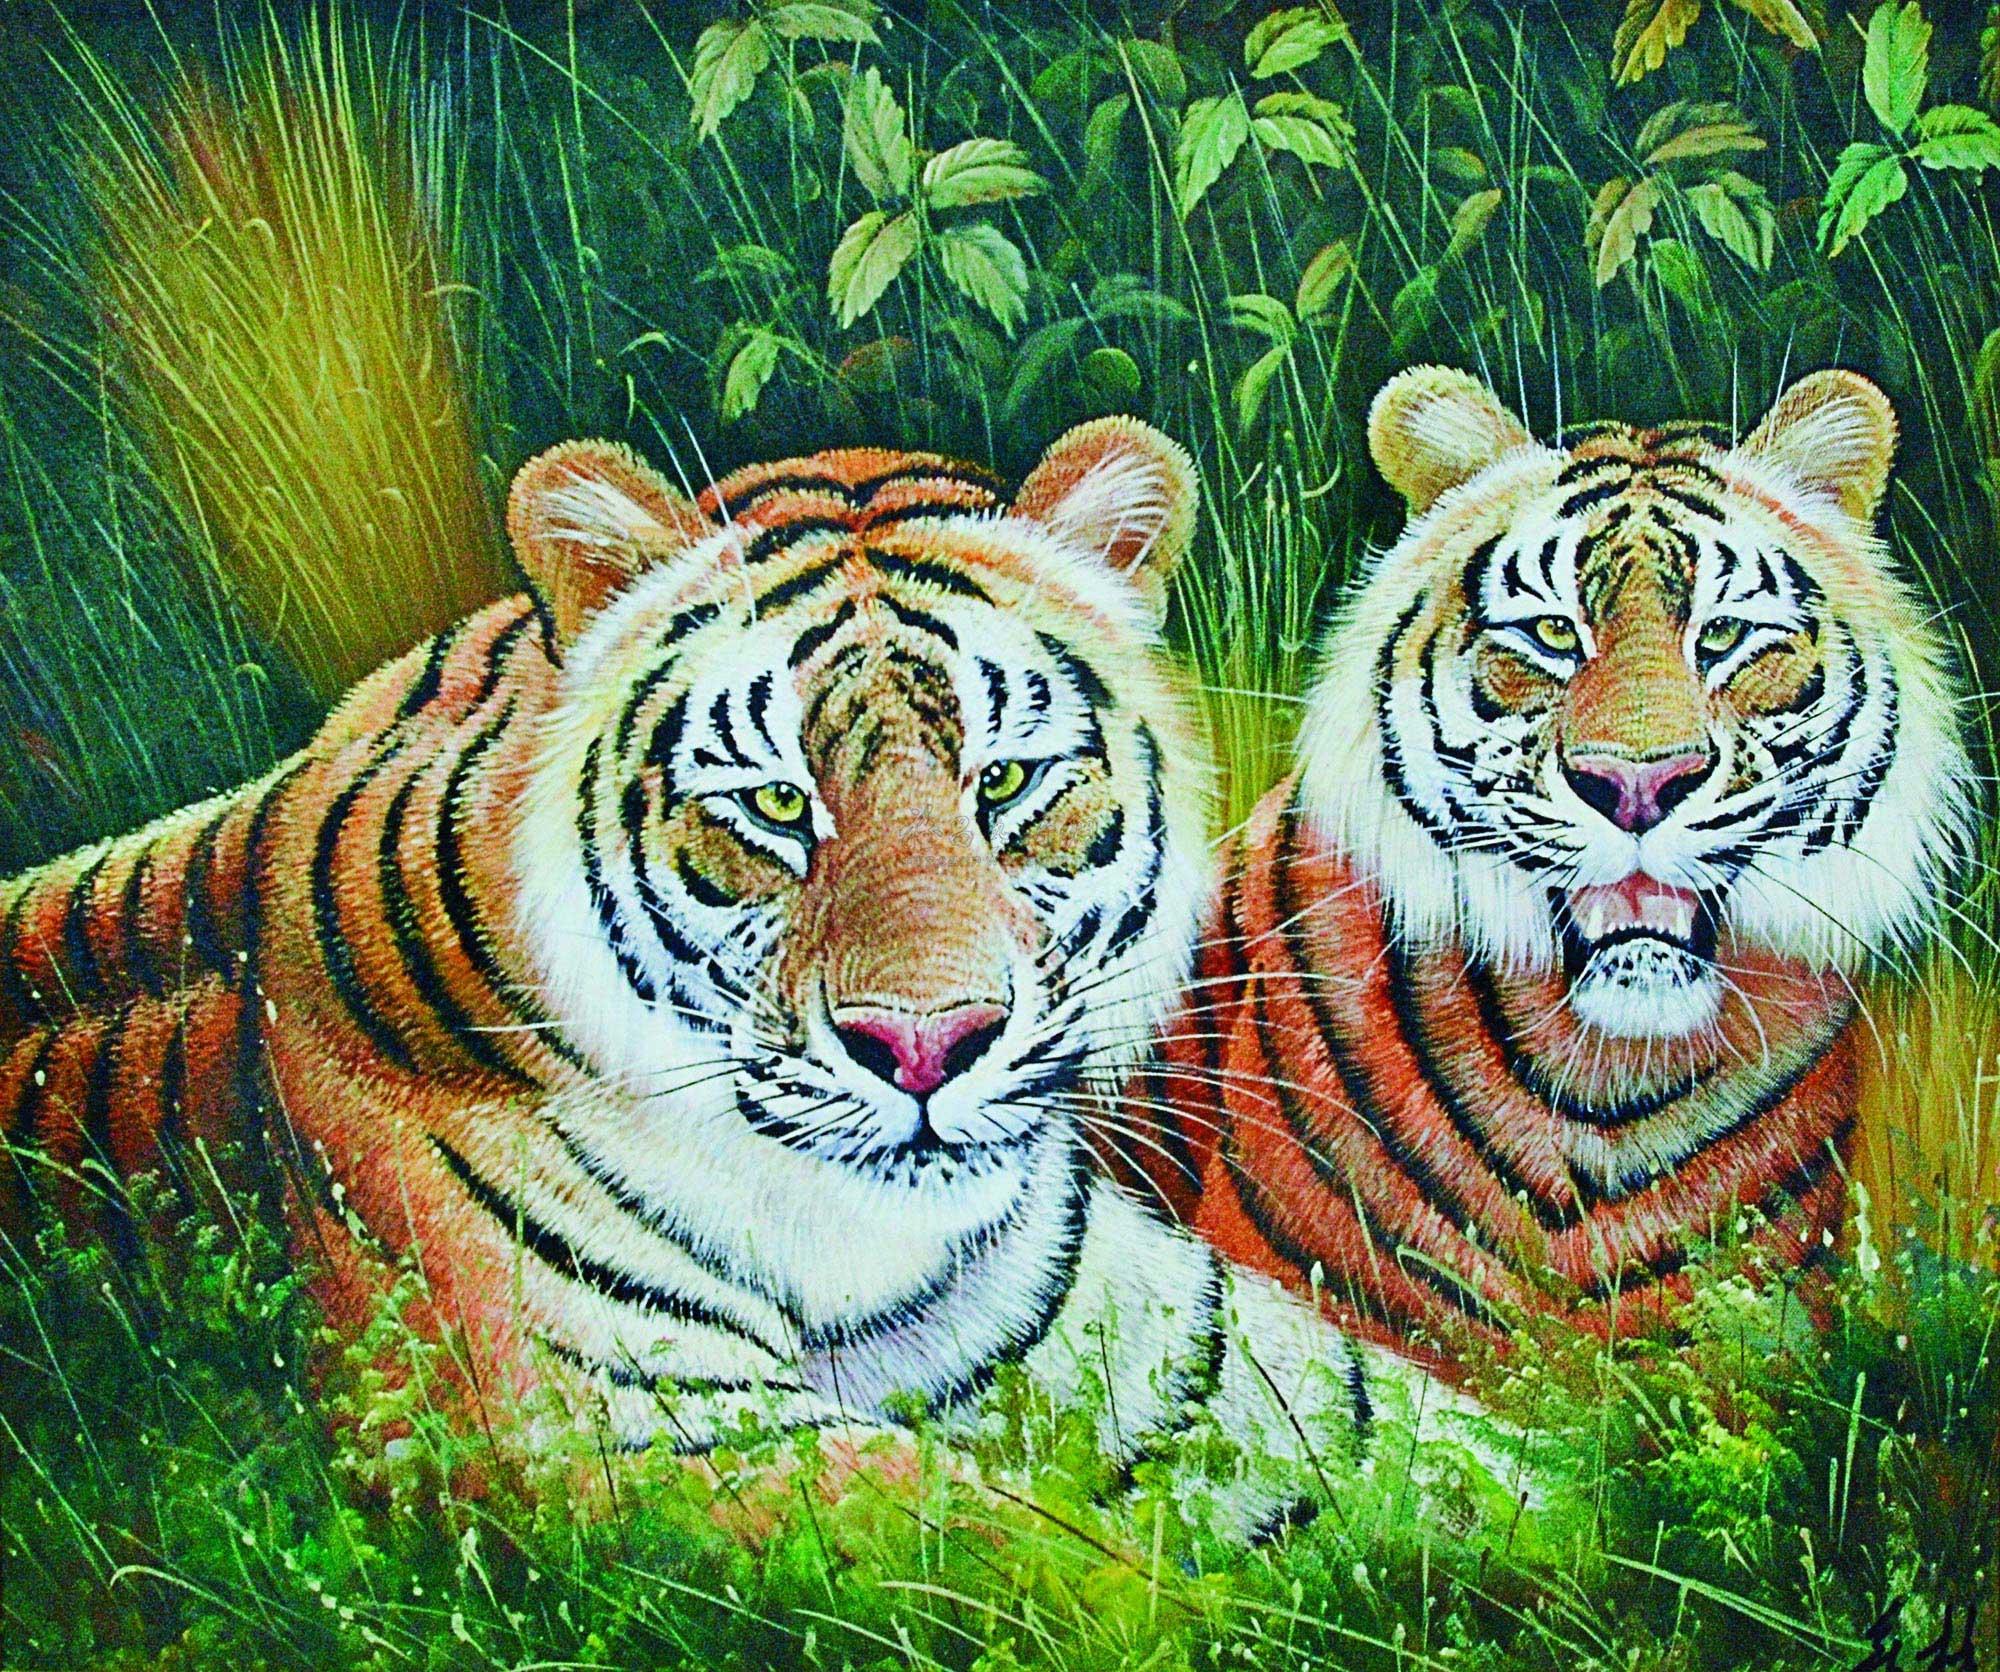 两只老虎国画图片